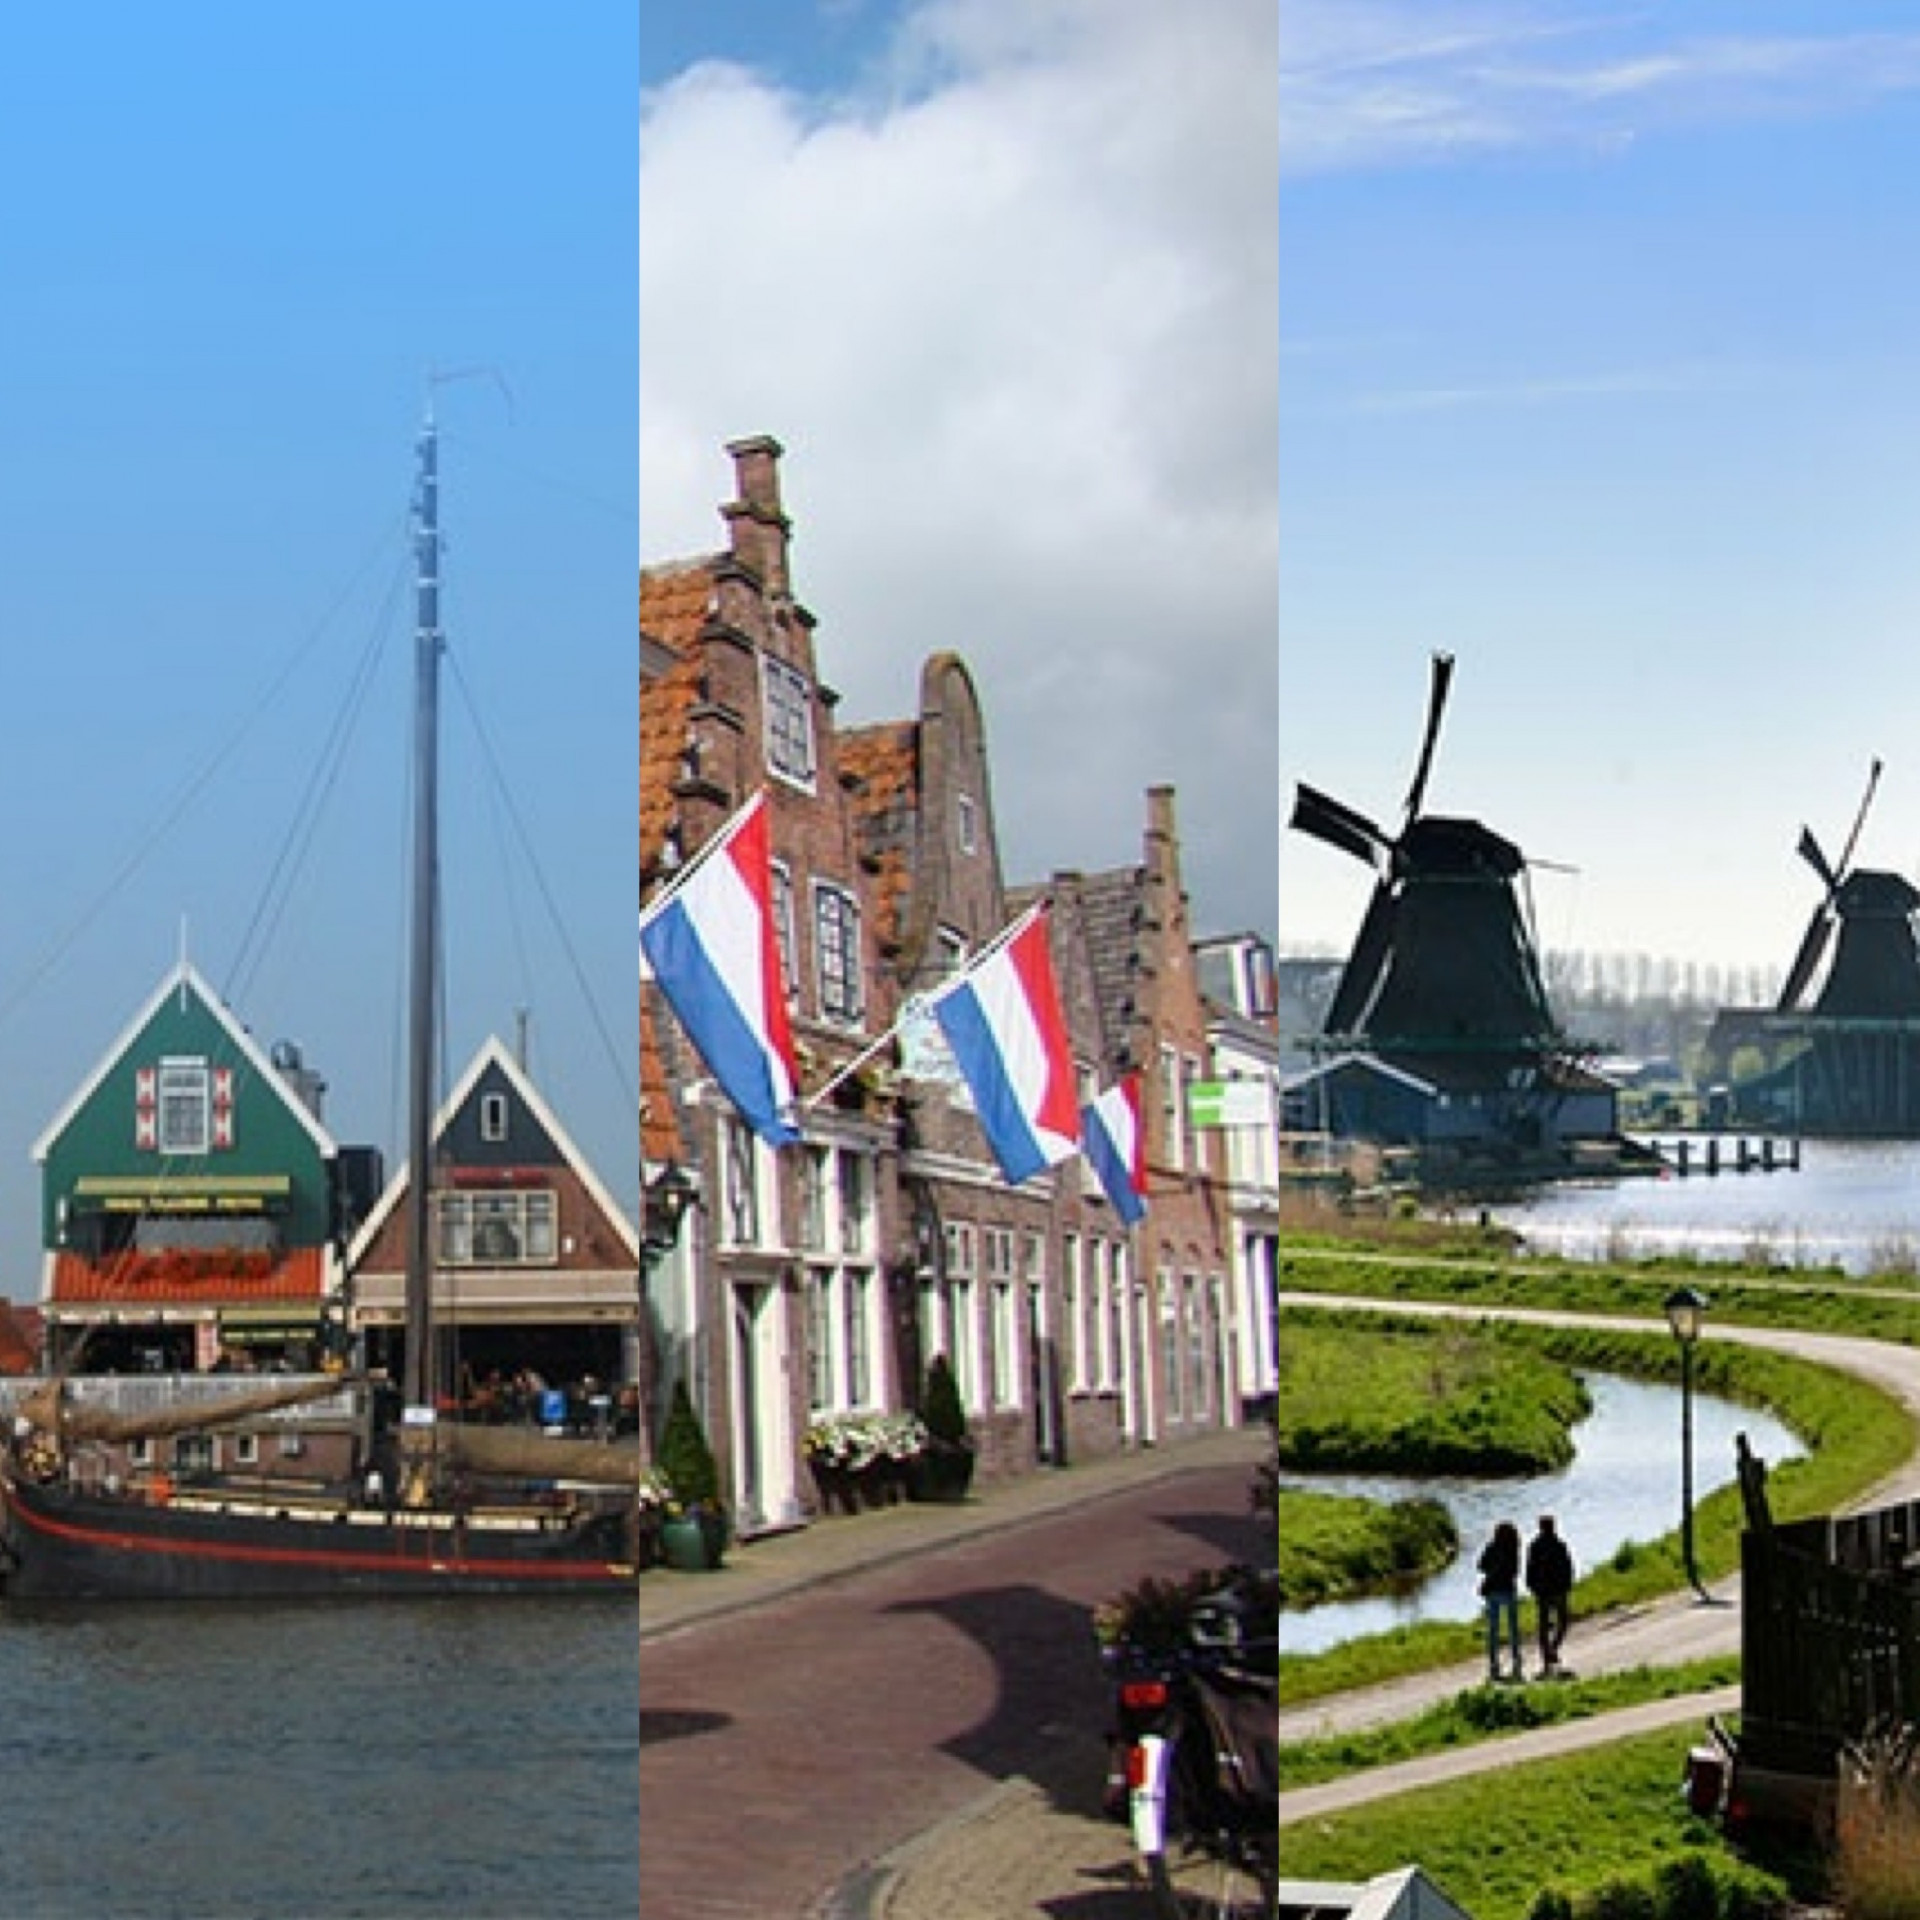 Volendam, Edam & Windmill Village